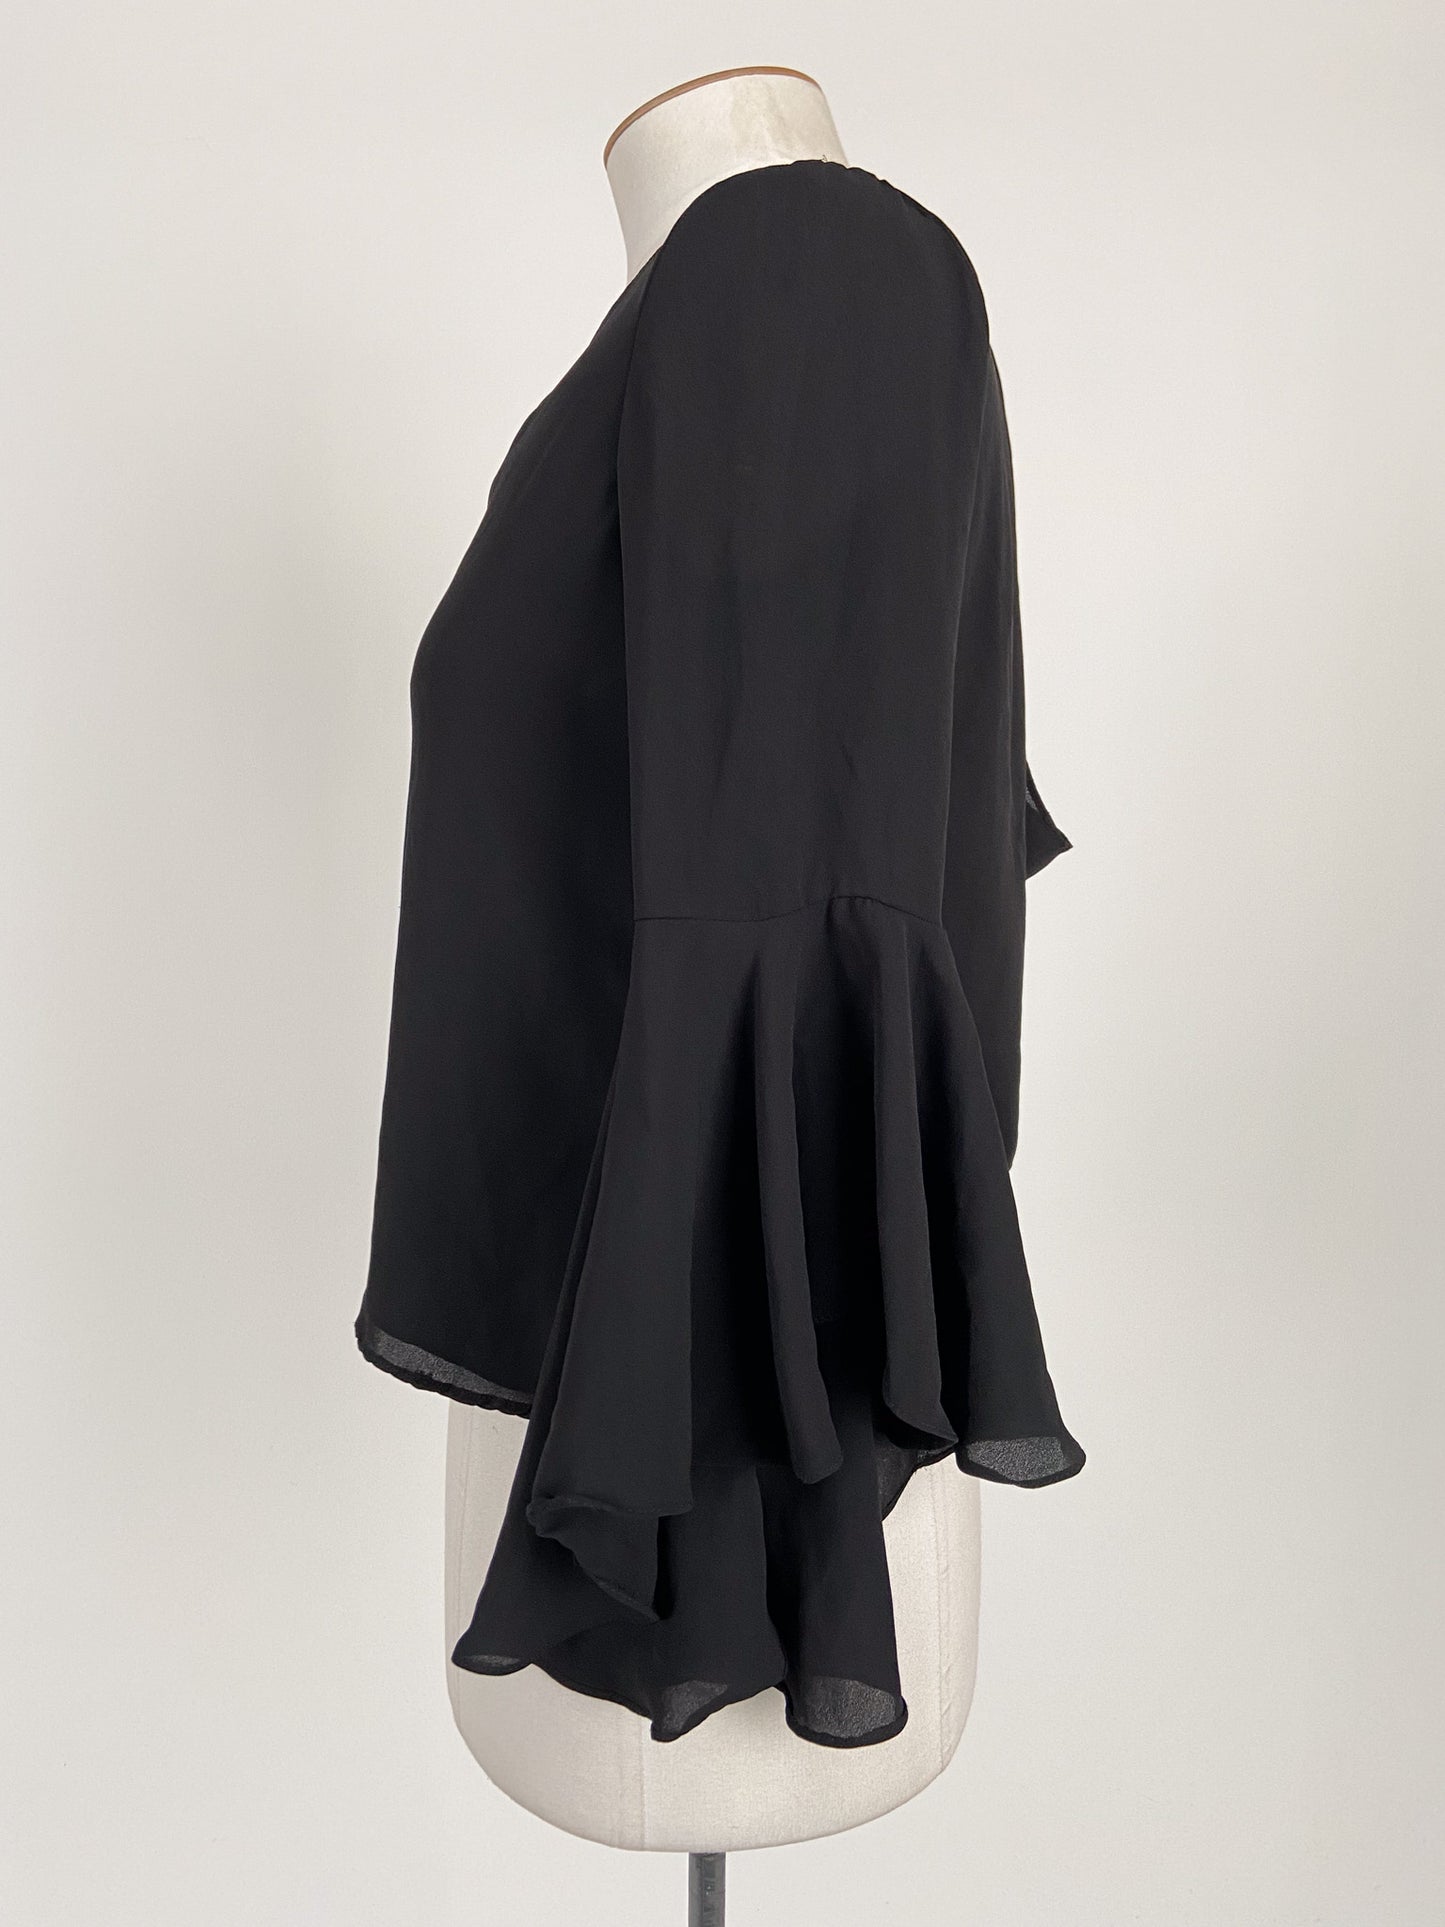 Zara | Black Workwear Top | Size M